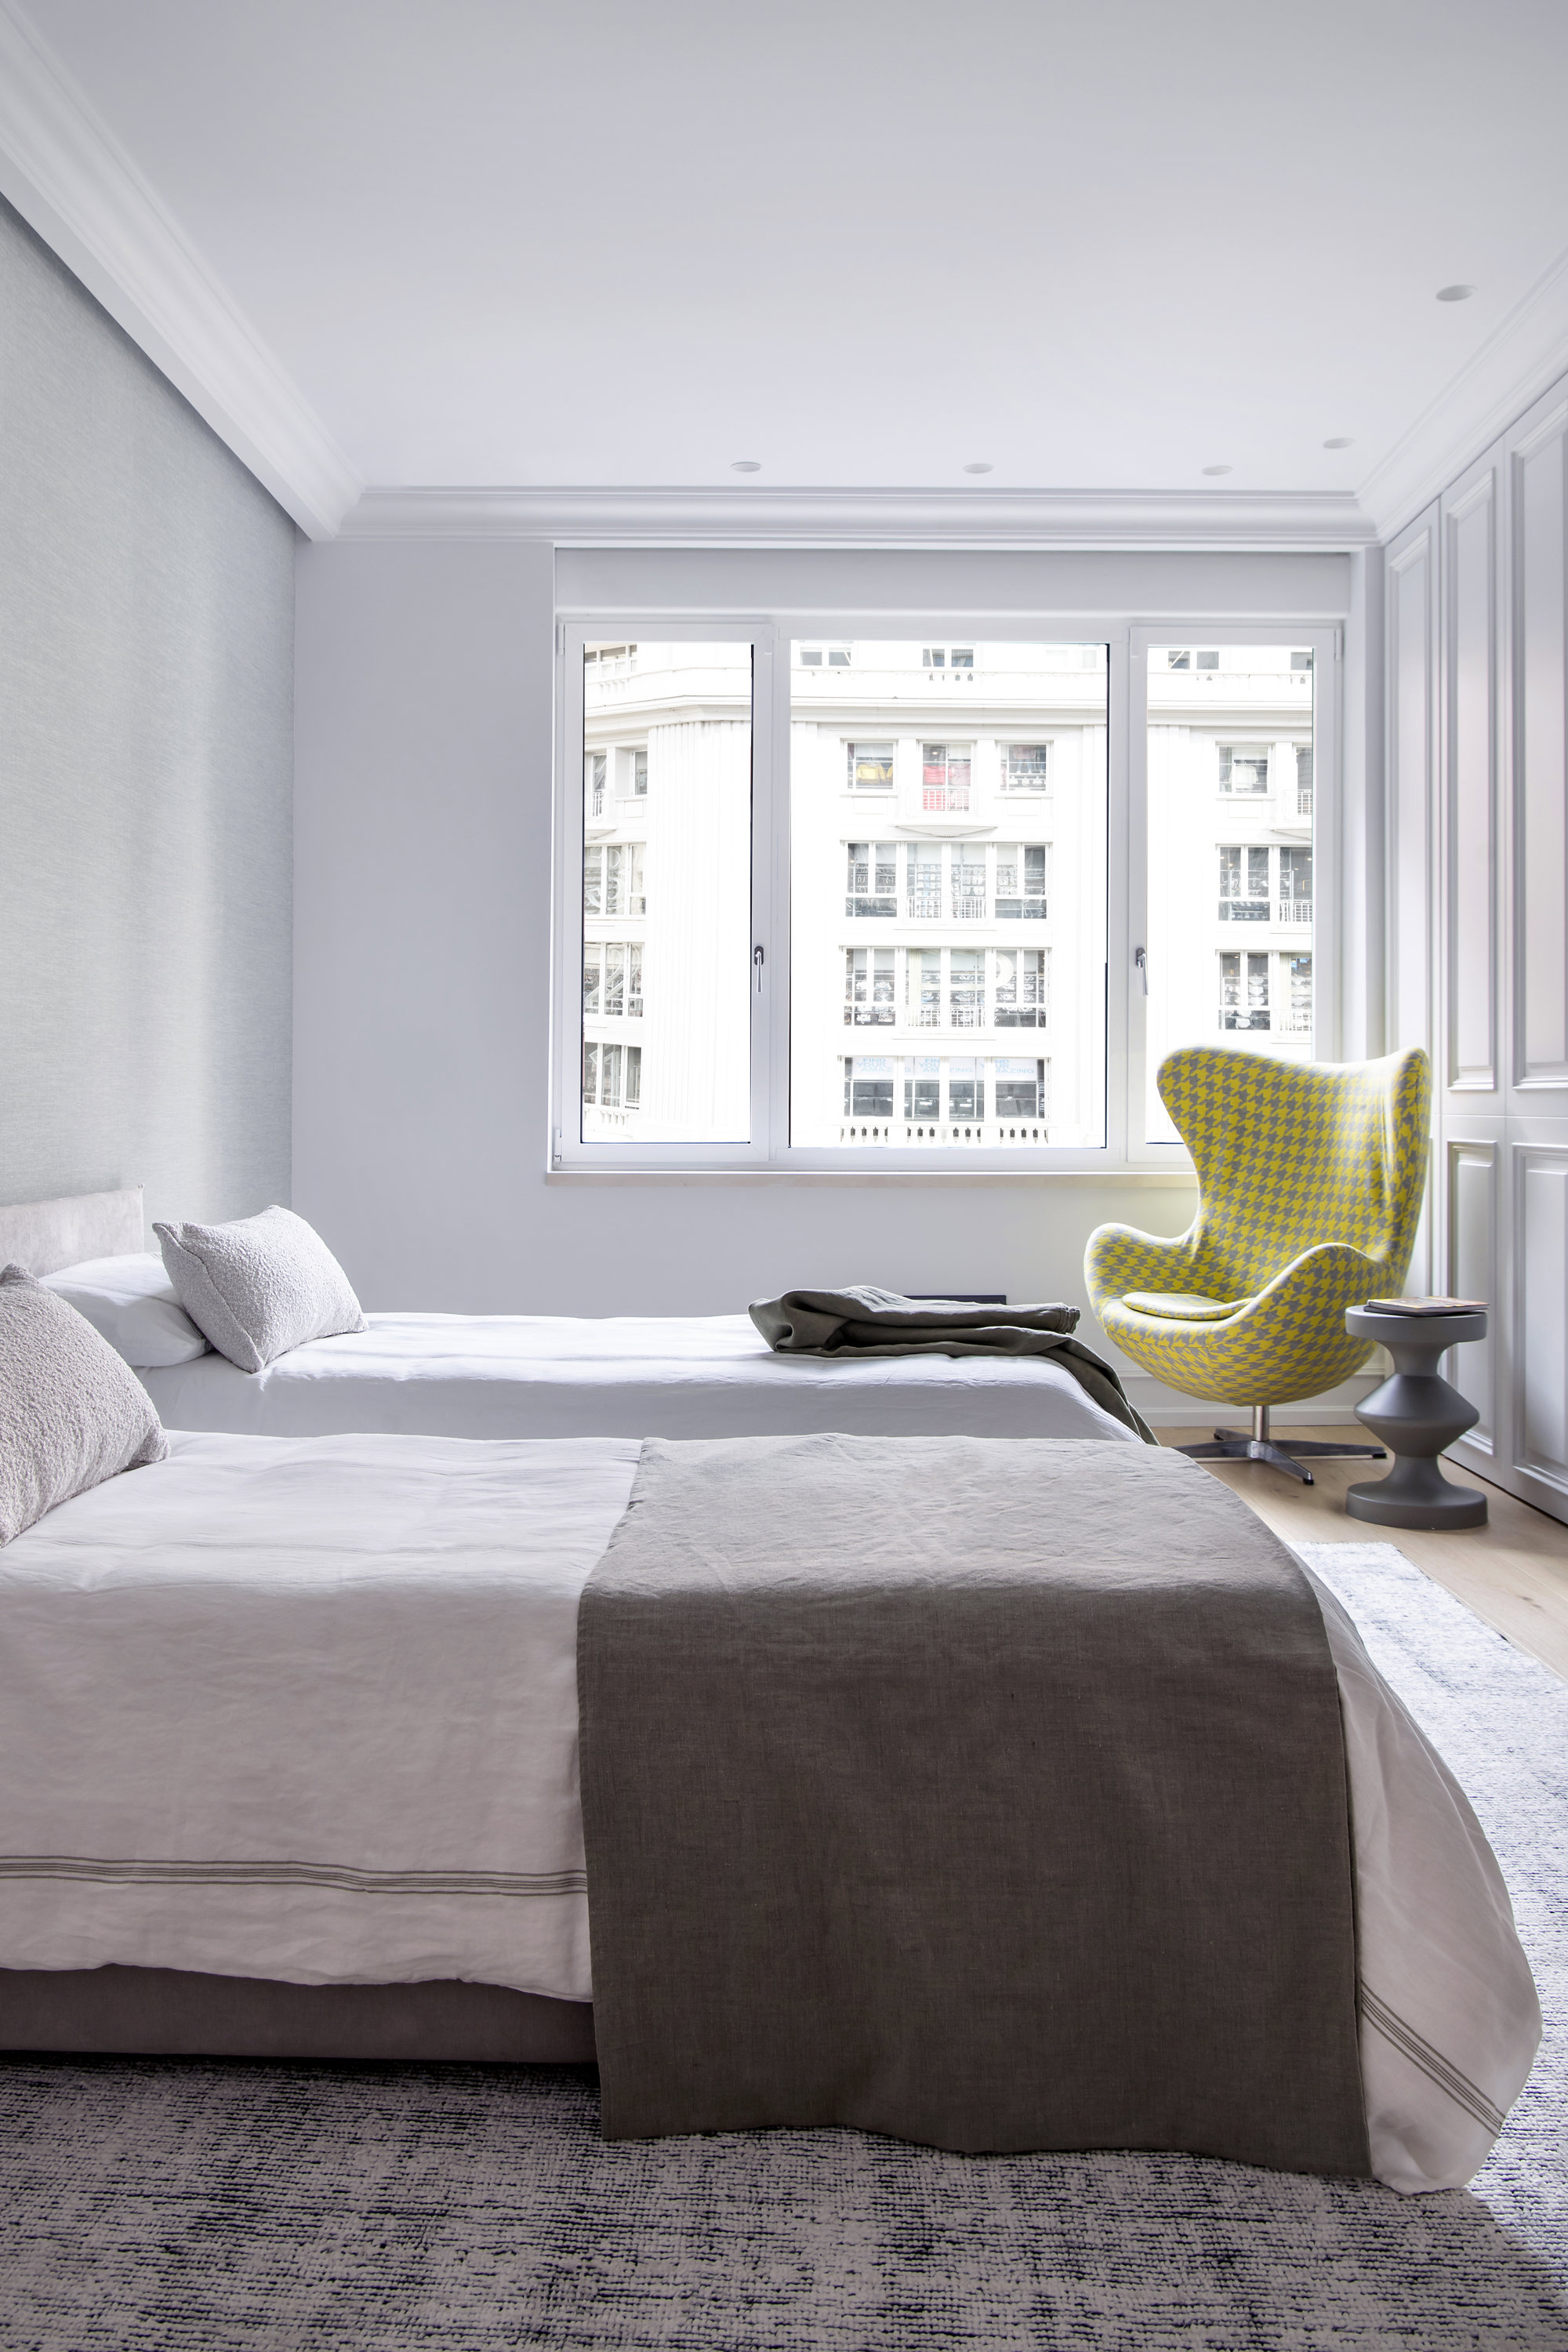 Dormitorio con dos camas en blanco y marrón